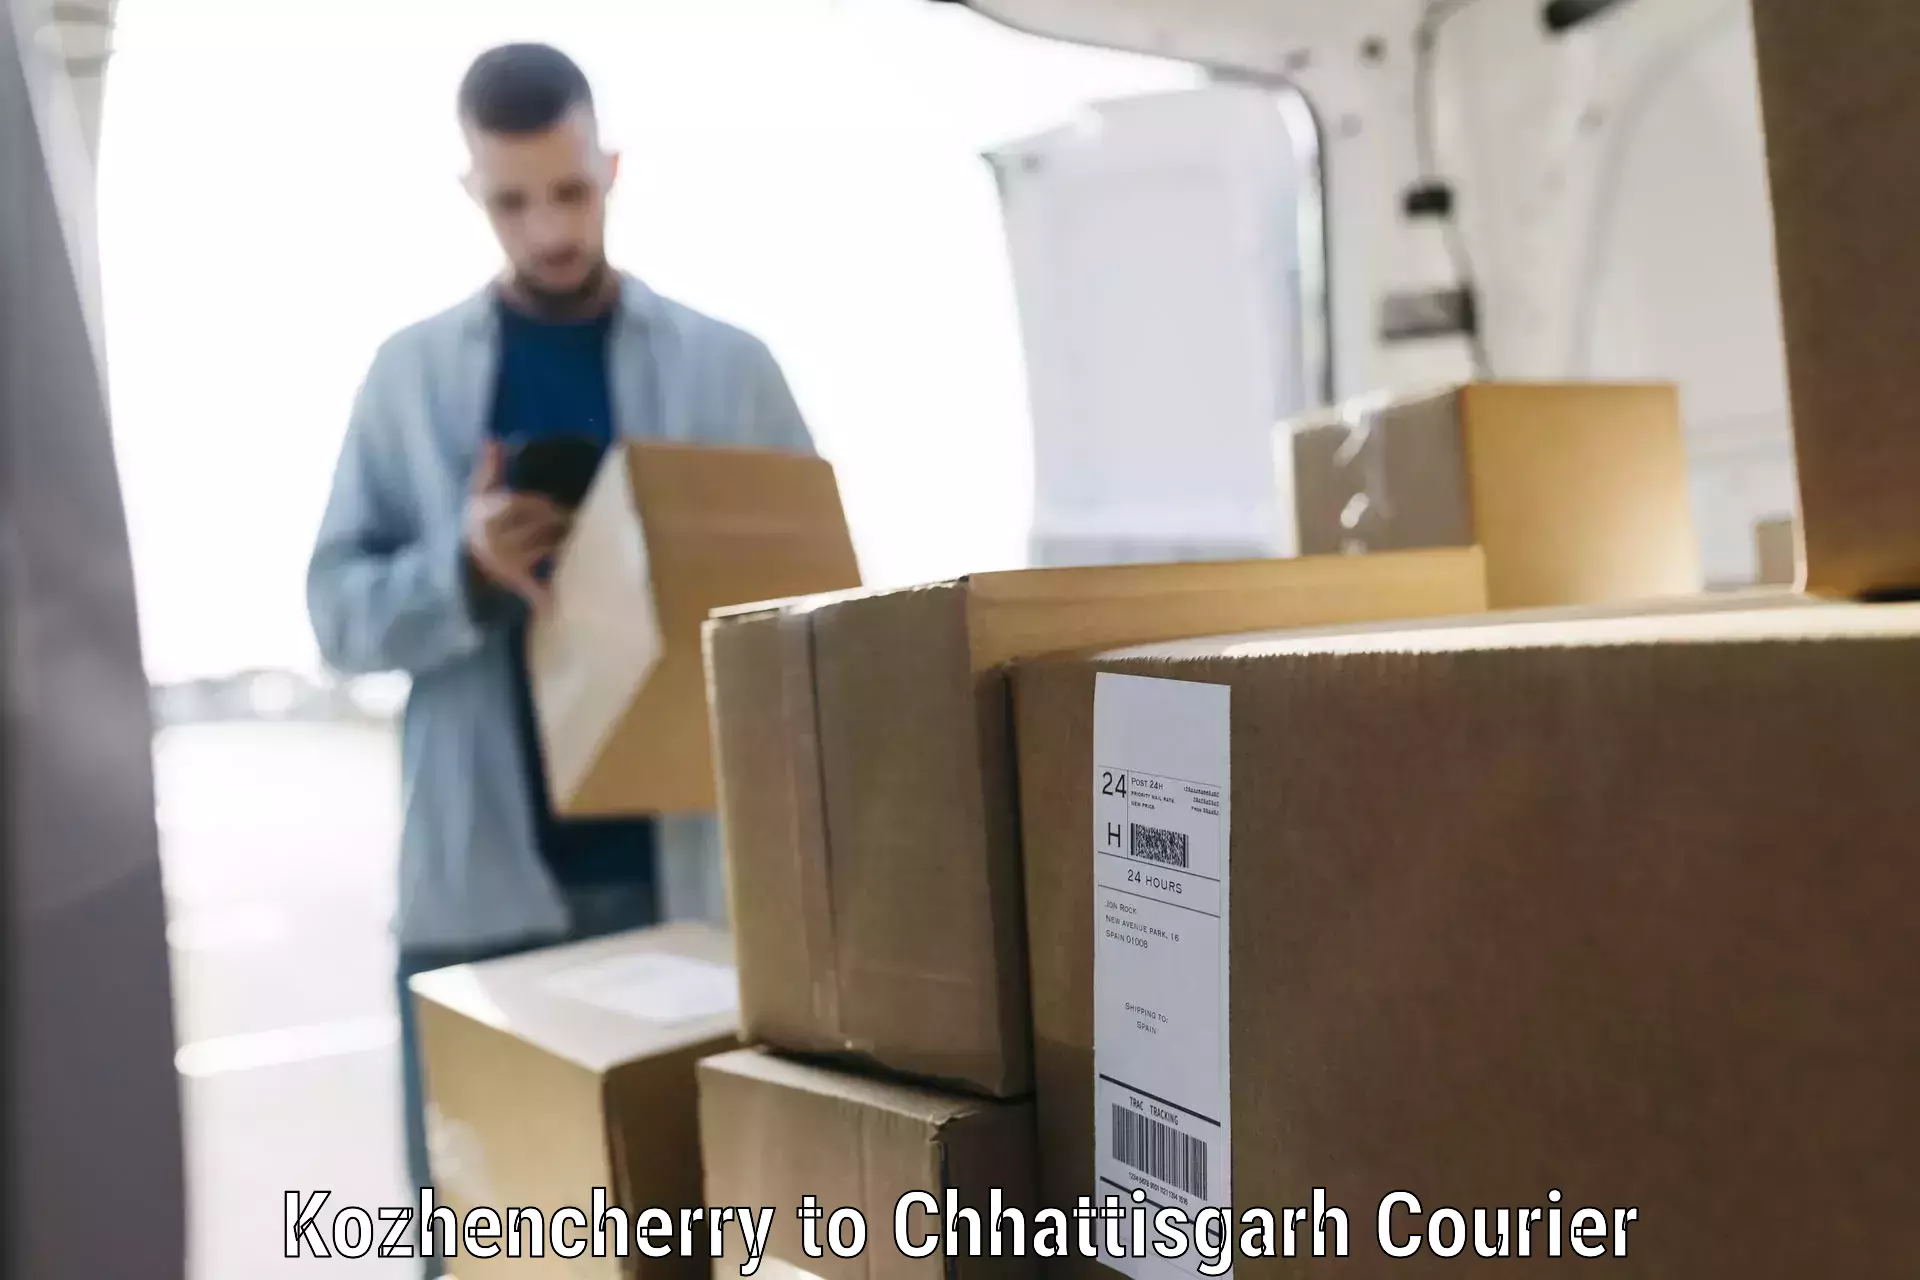 Luggage transport consultancy Kozhencherry to Chhattisgarh